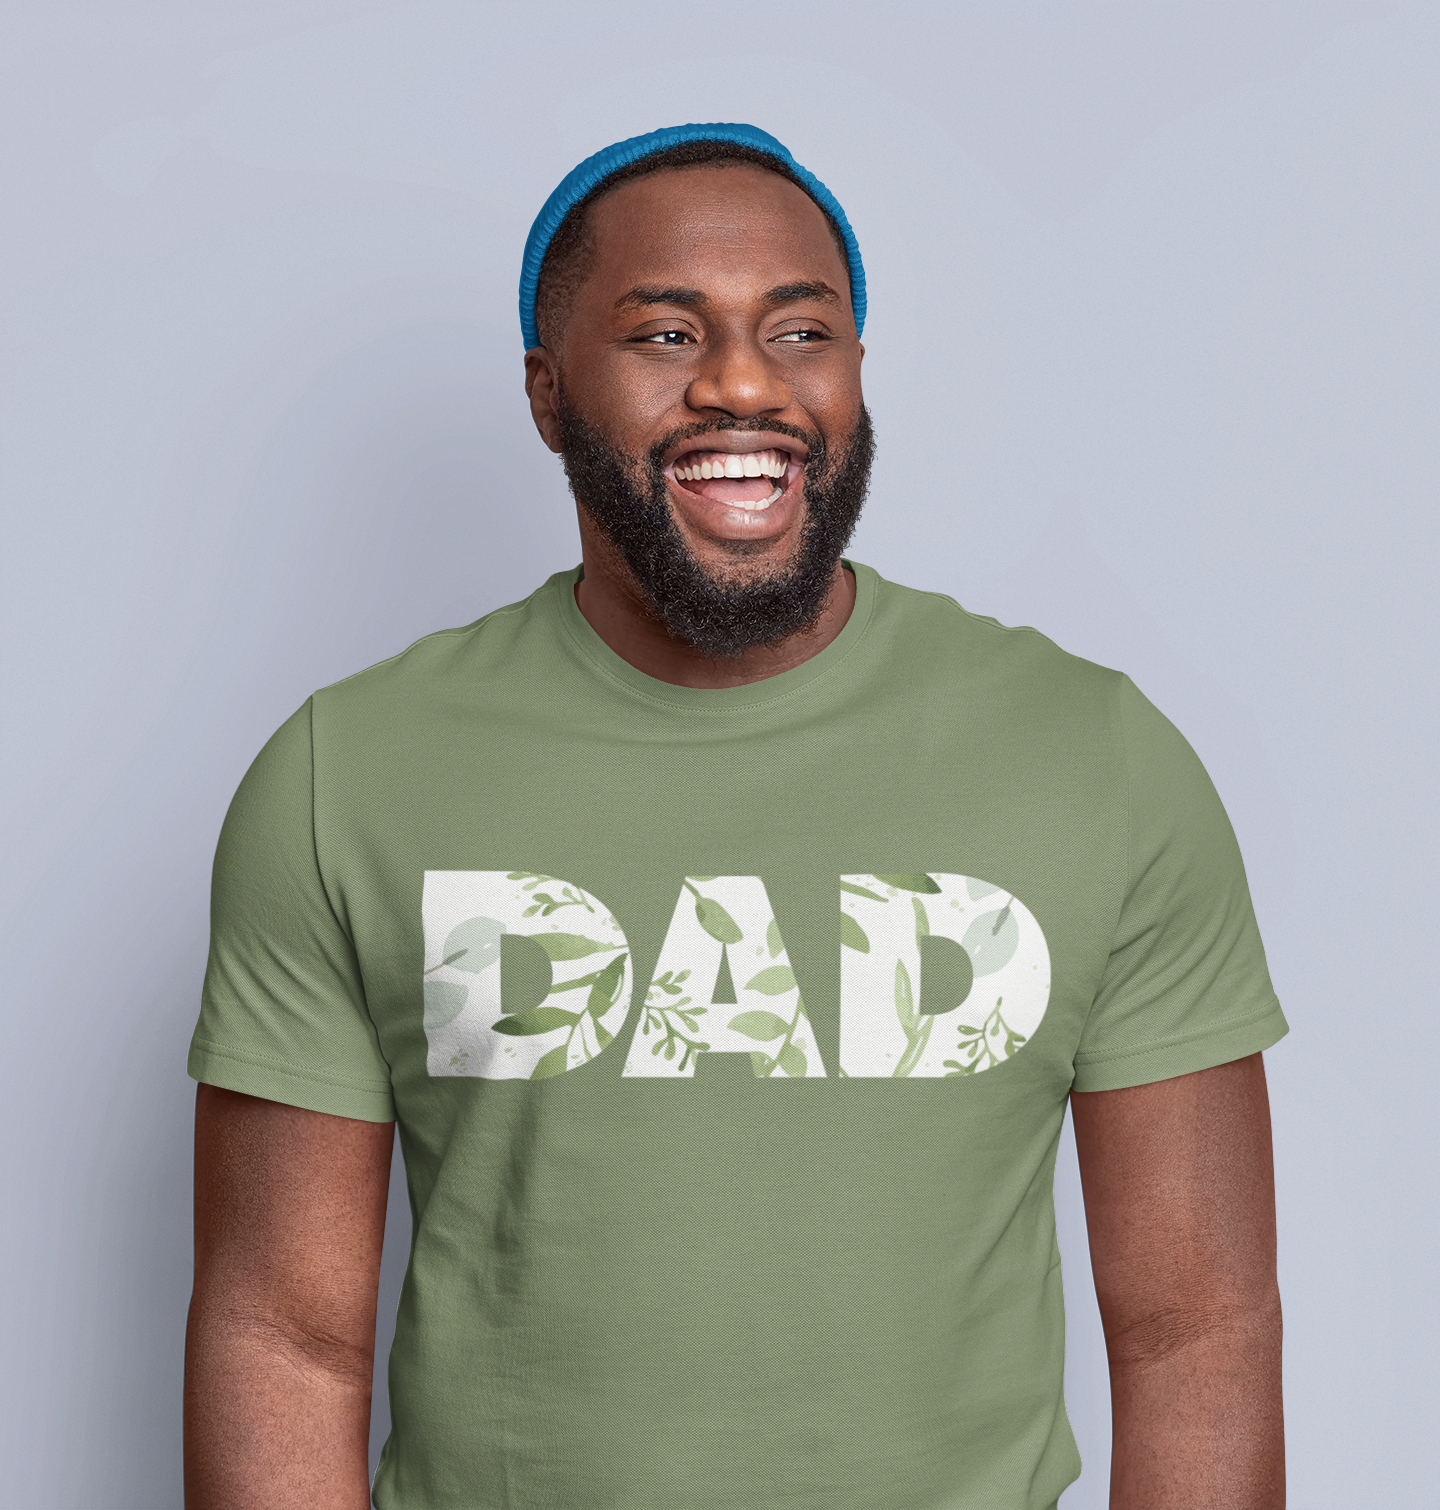 Morgan Dad T-shirt